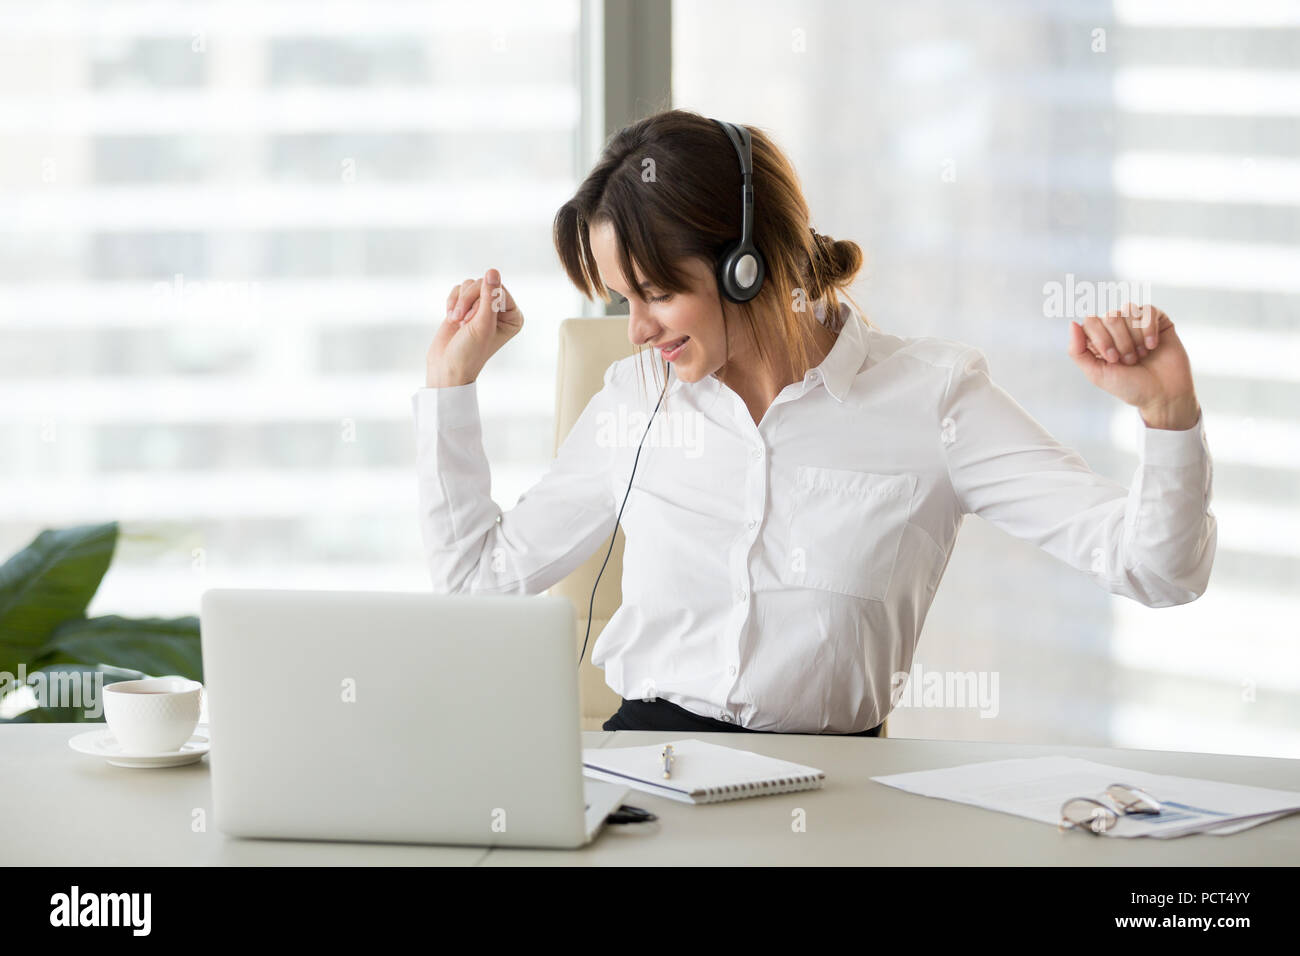 Les femmes au travail heureux d'écouter de la musique la danse de chaise de bureau Banque D'Images